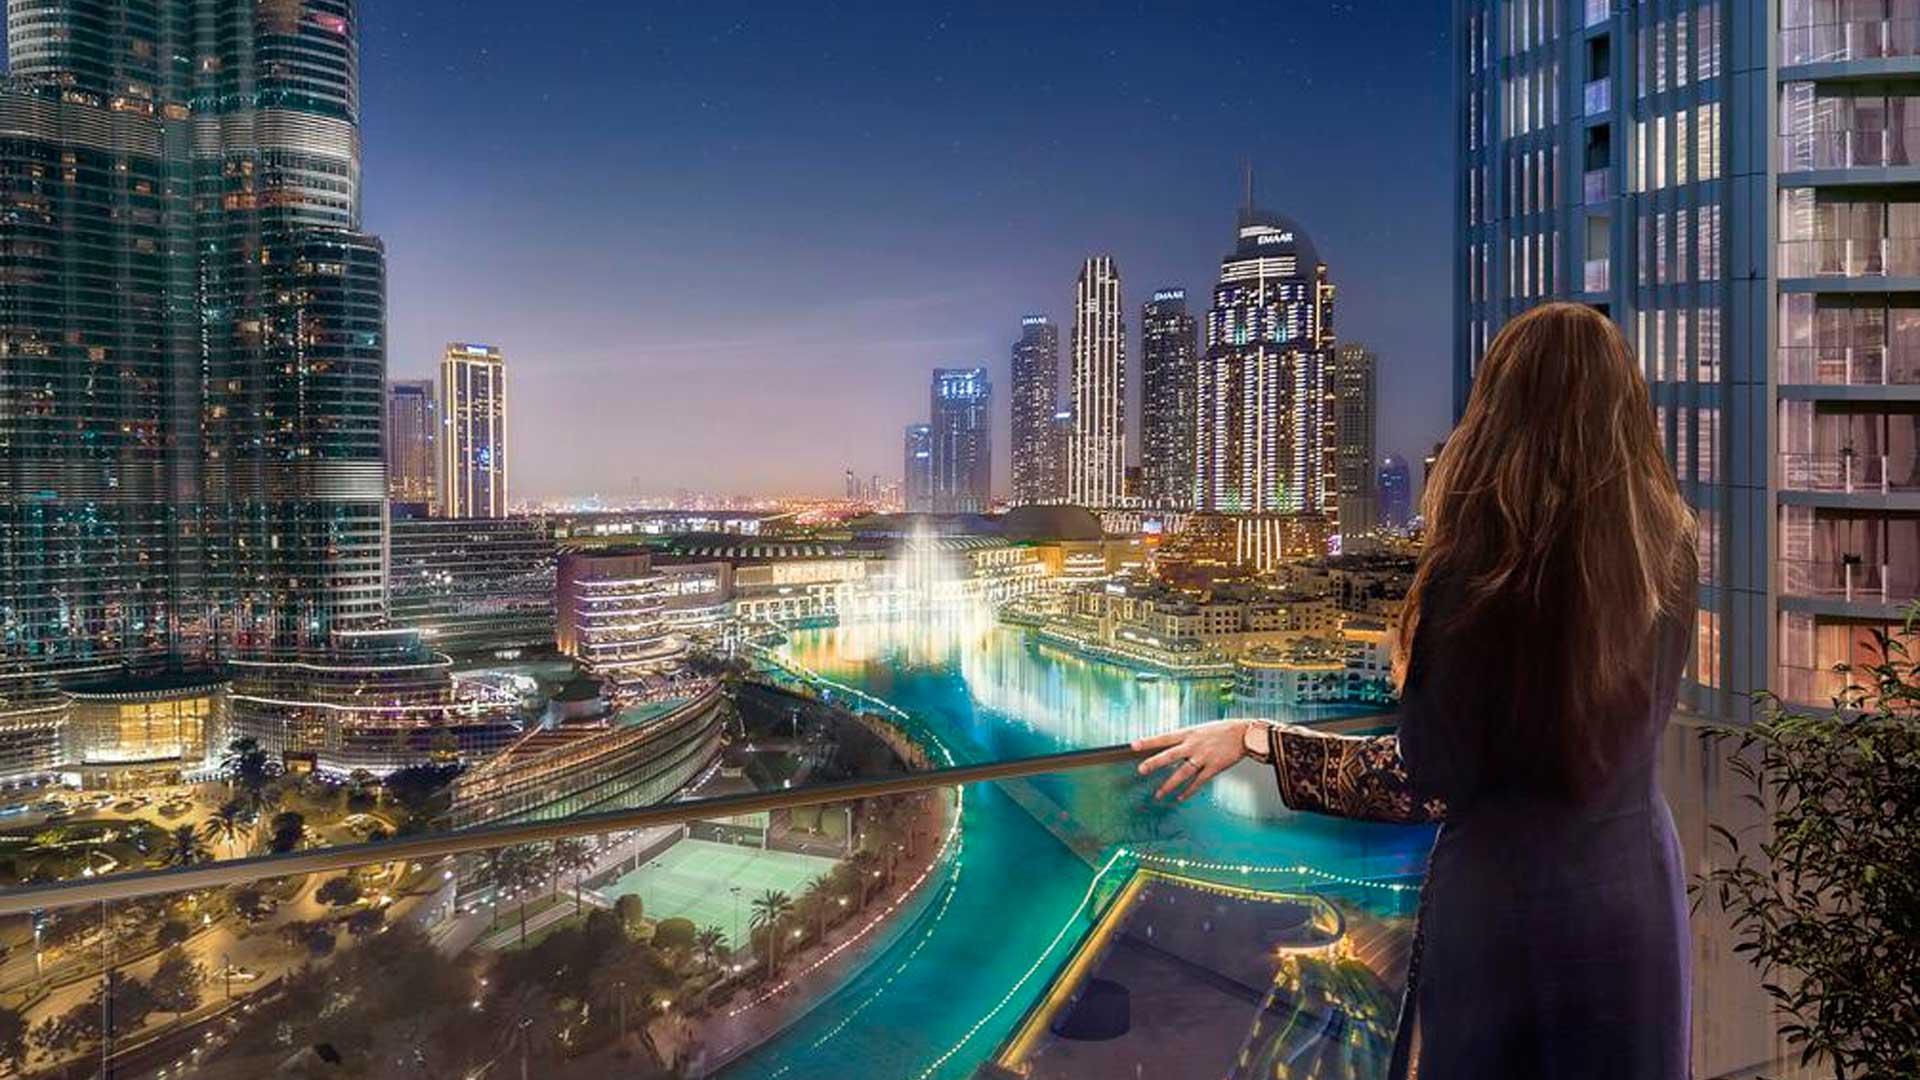 ST.REGIS RESIDENCES by Emaar Properties in Downtown Dubai, Dubai, UAE4